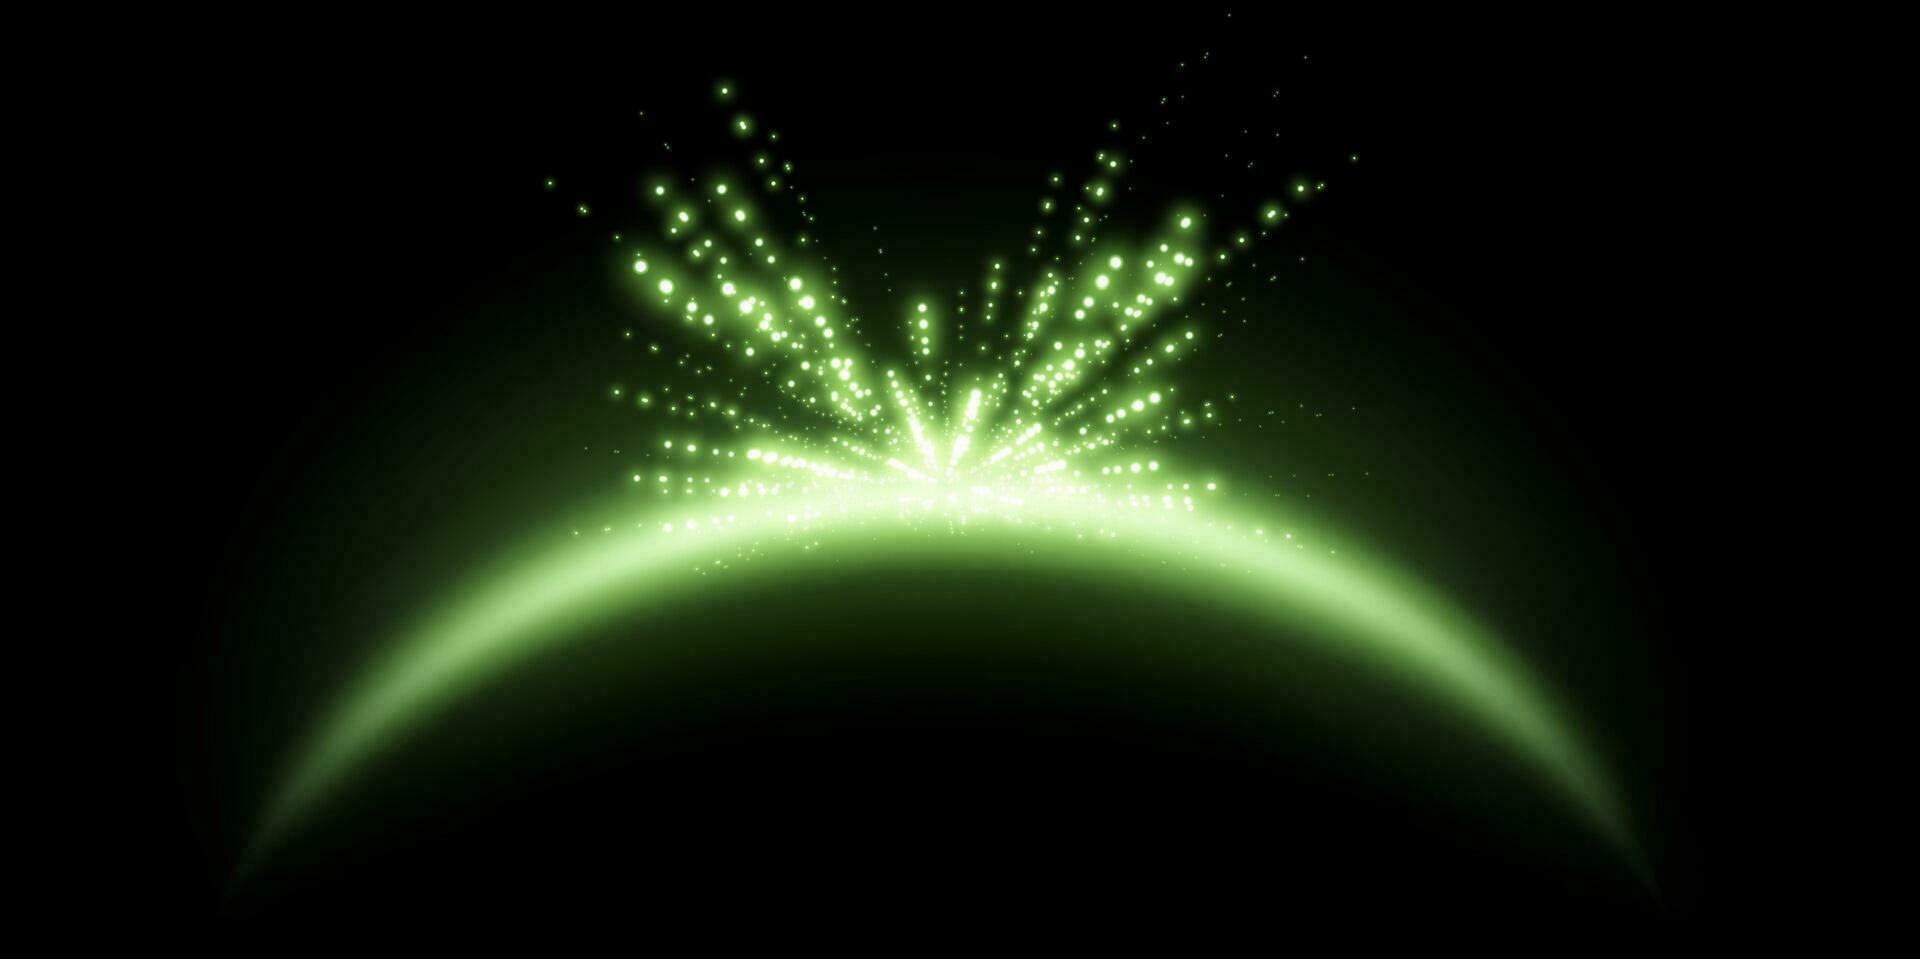 grön magi båge med lysande partiklar, solljus lins blossa. neon realistisk energi blossa båge. abstrakt ljus effekt på en svart bakgrund. vektor illustration.